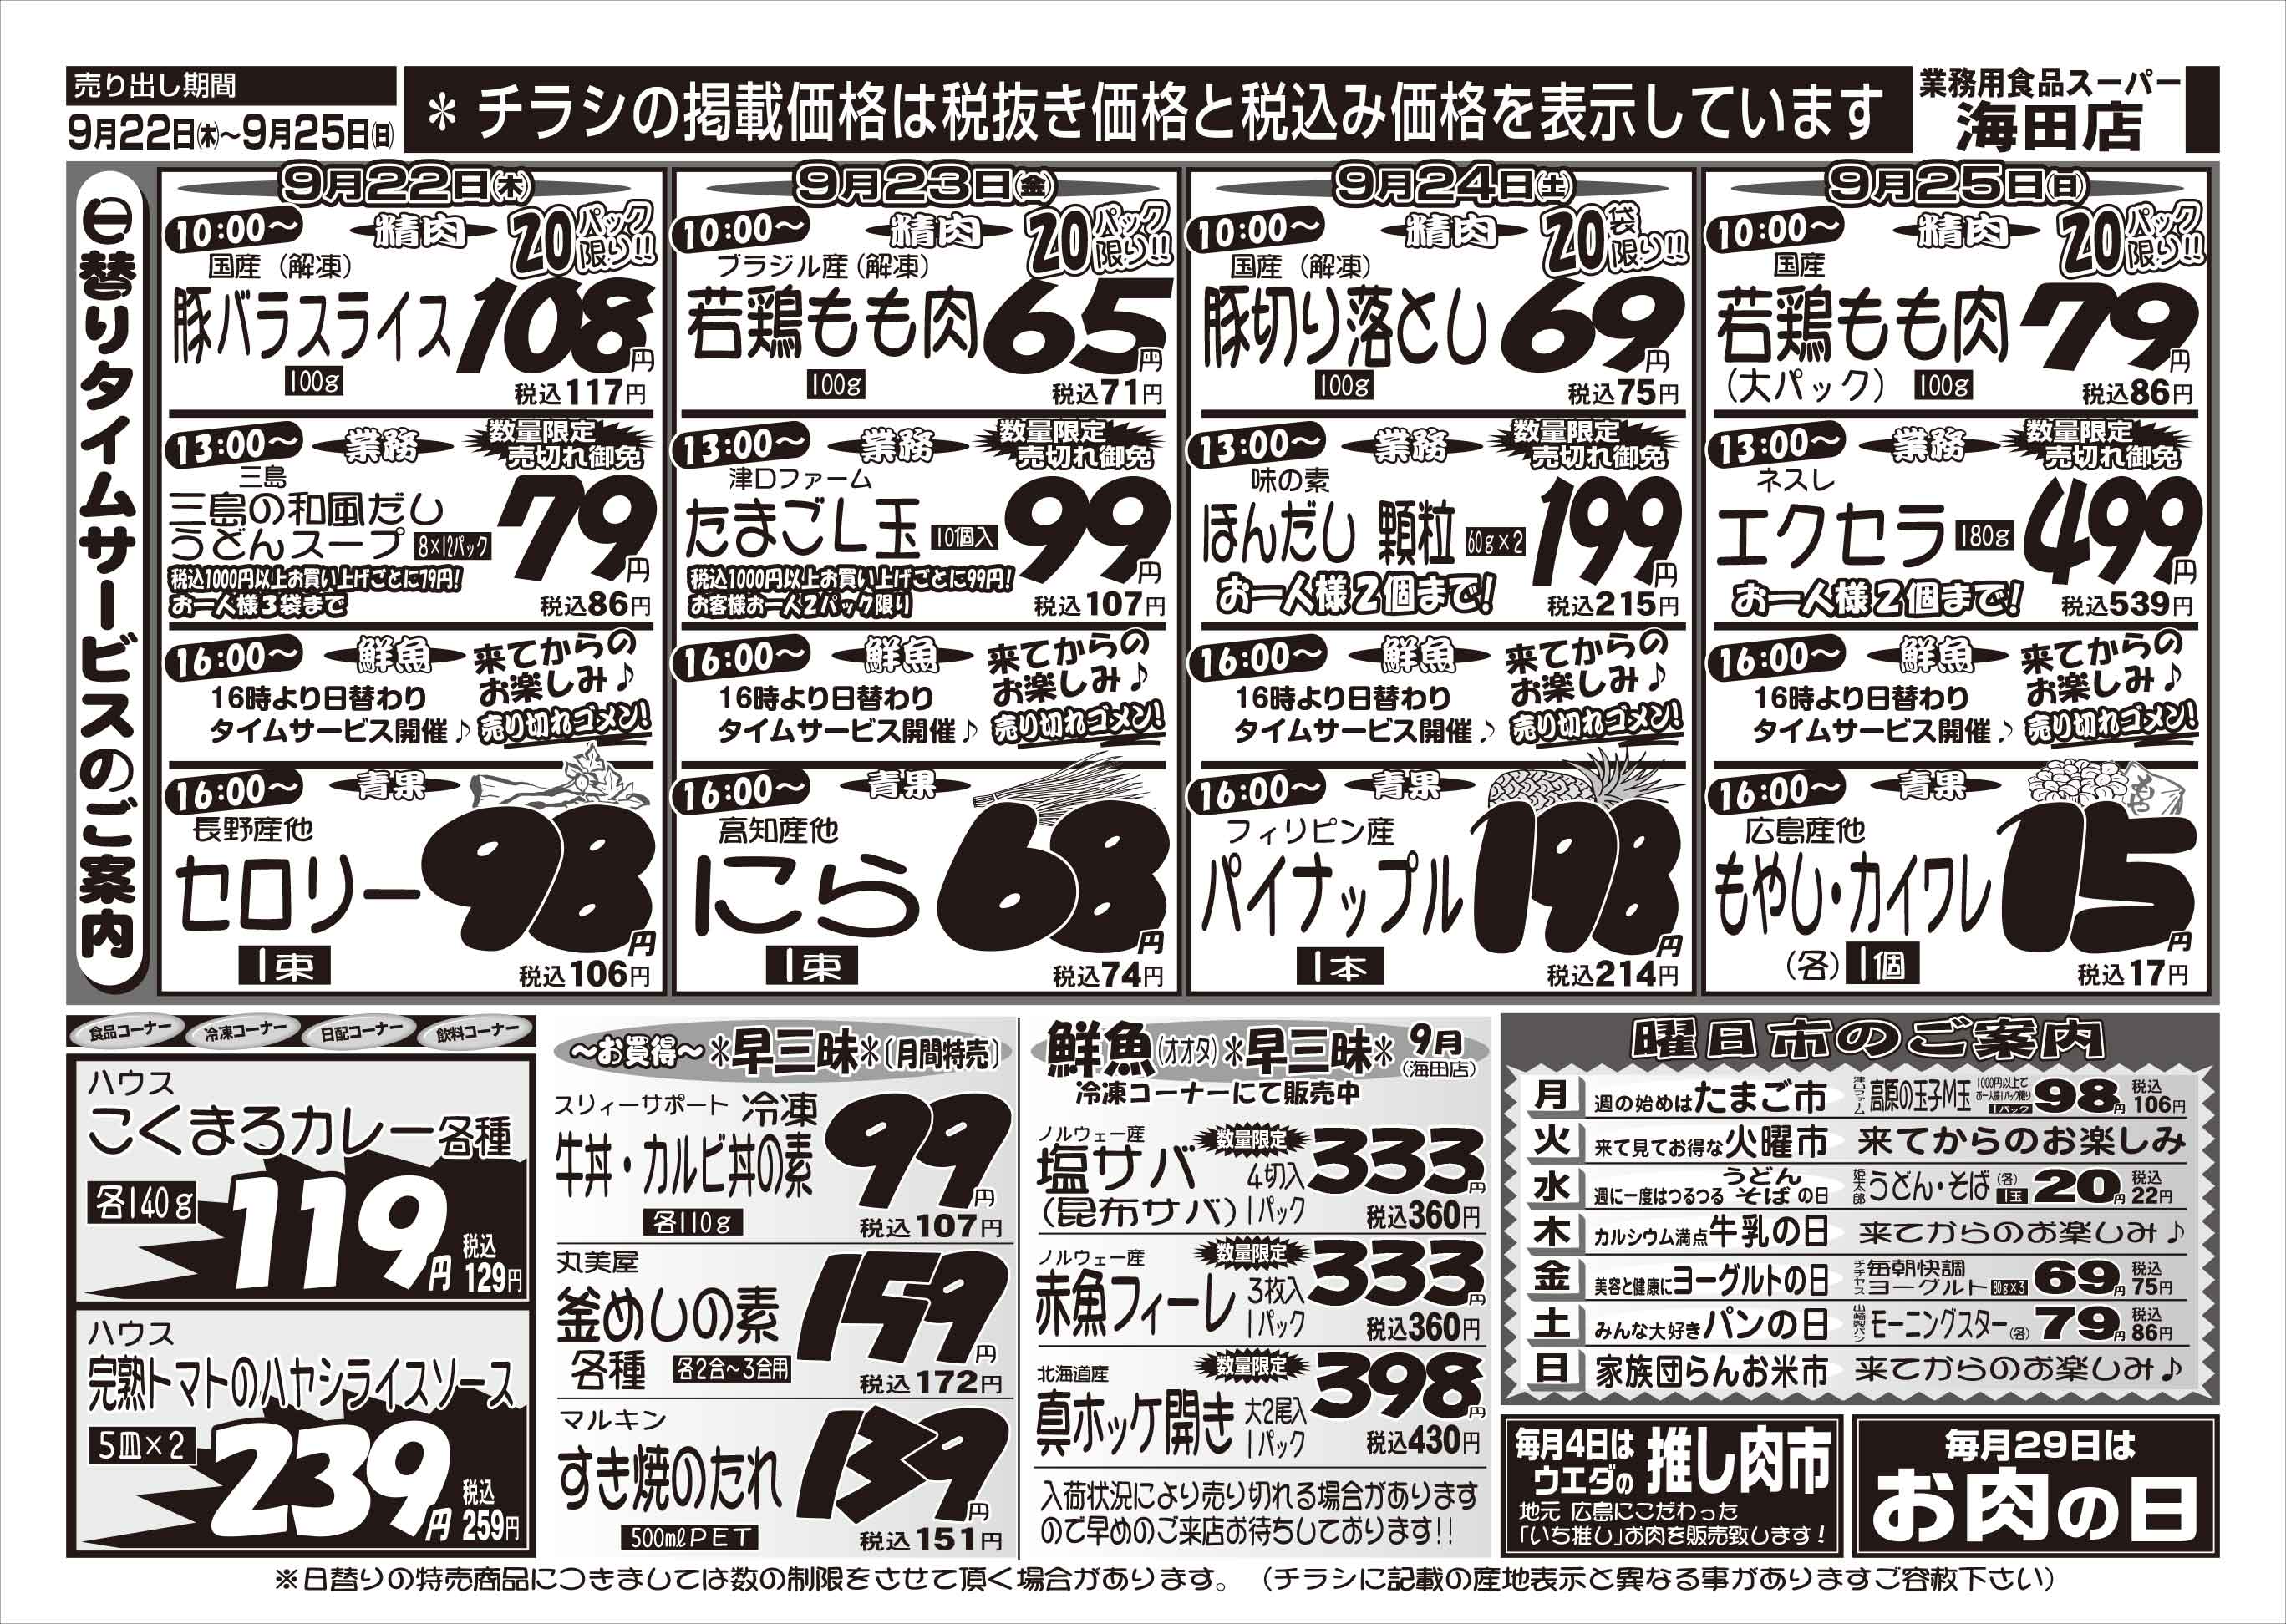 業務用食品スーパー海田店 9/22-25 週末お買い得情報チラシウラ